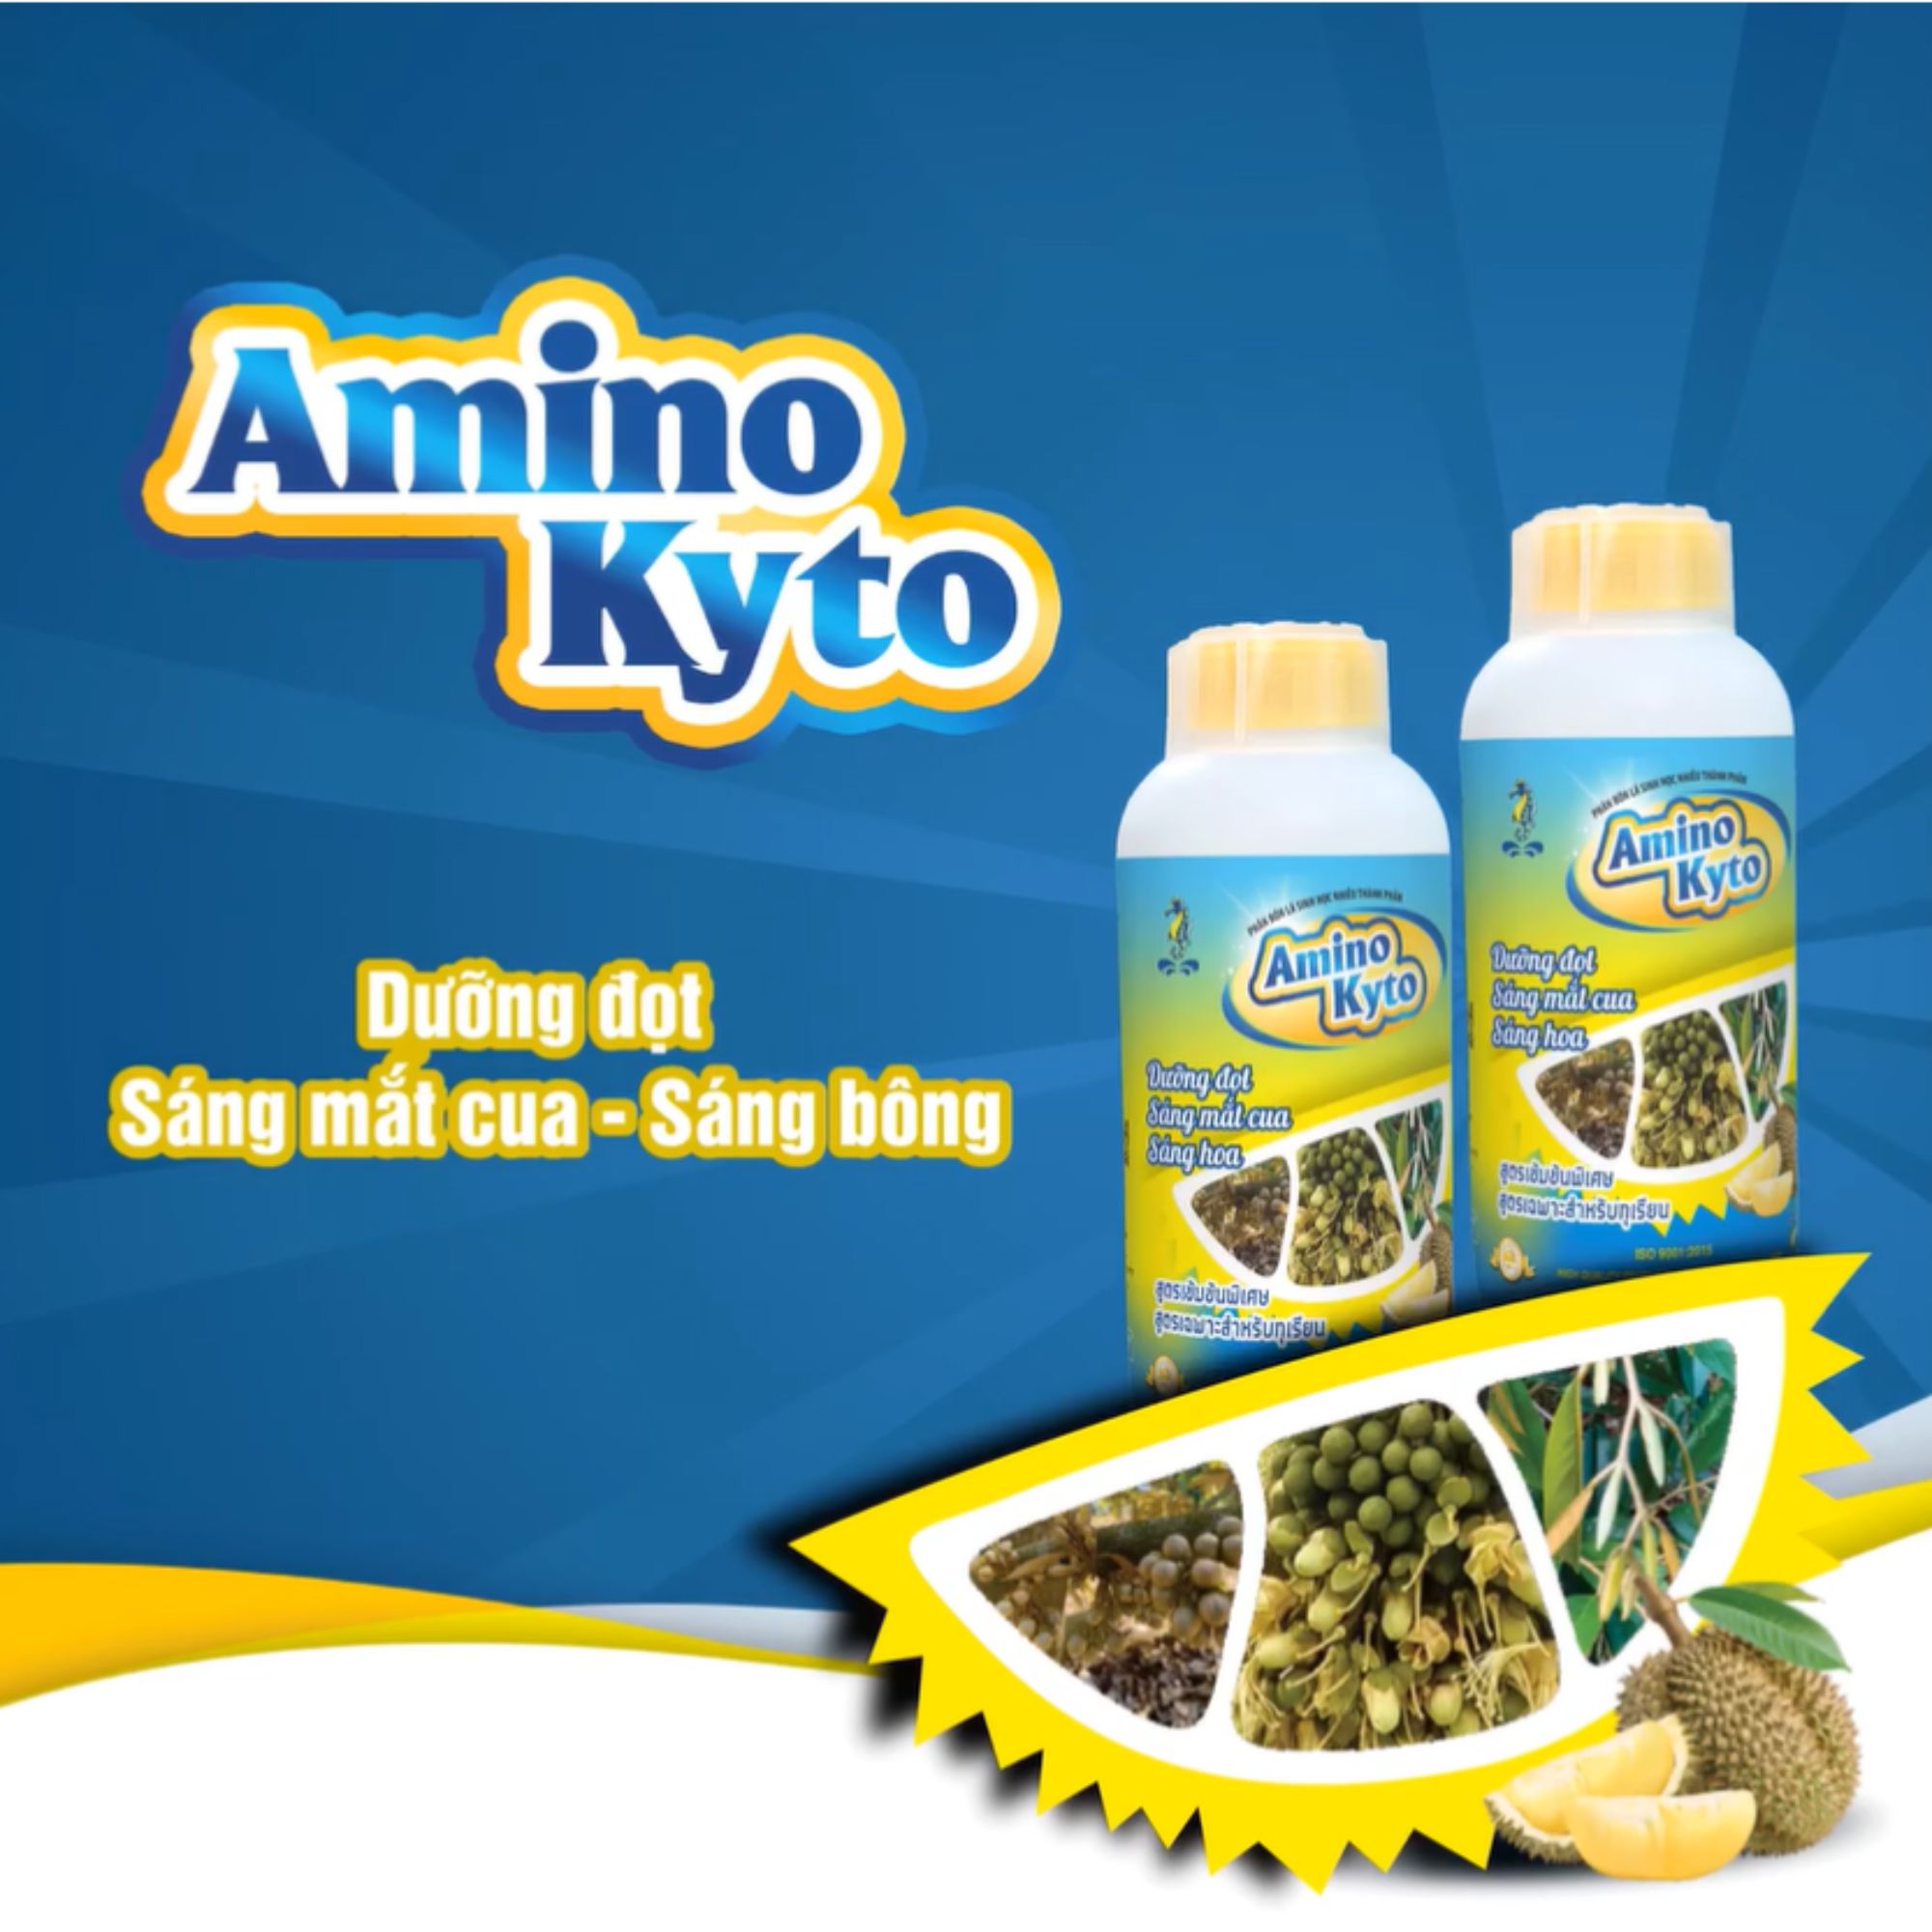 Sitto Amino Kyto chuyên sầu riêng (Chai 1l): Dưỡng đọt - sáng mắt cua - sáng hoa